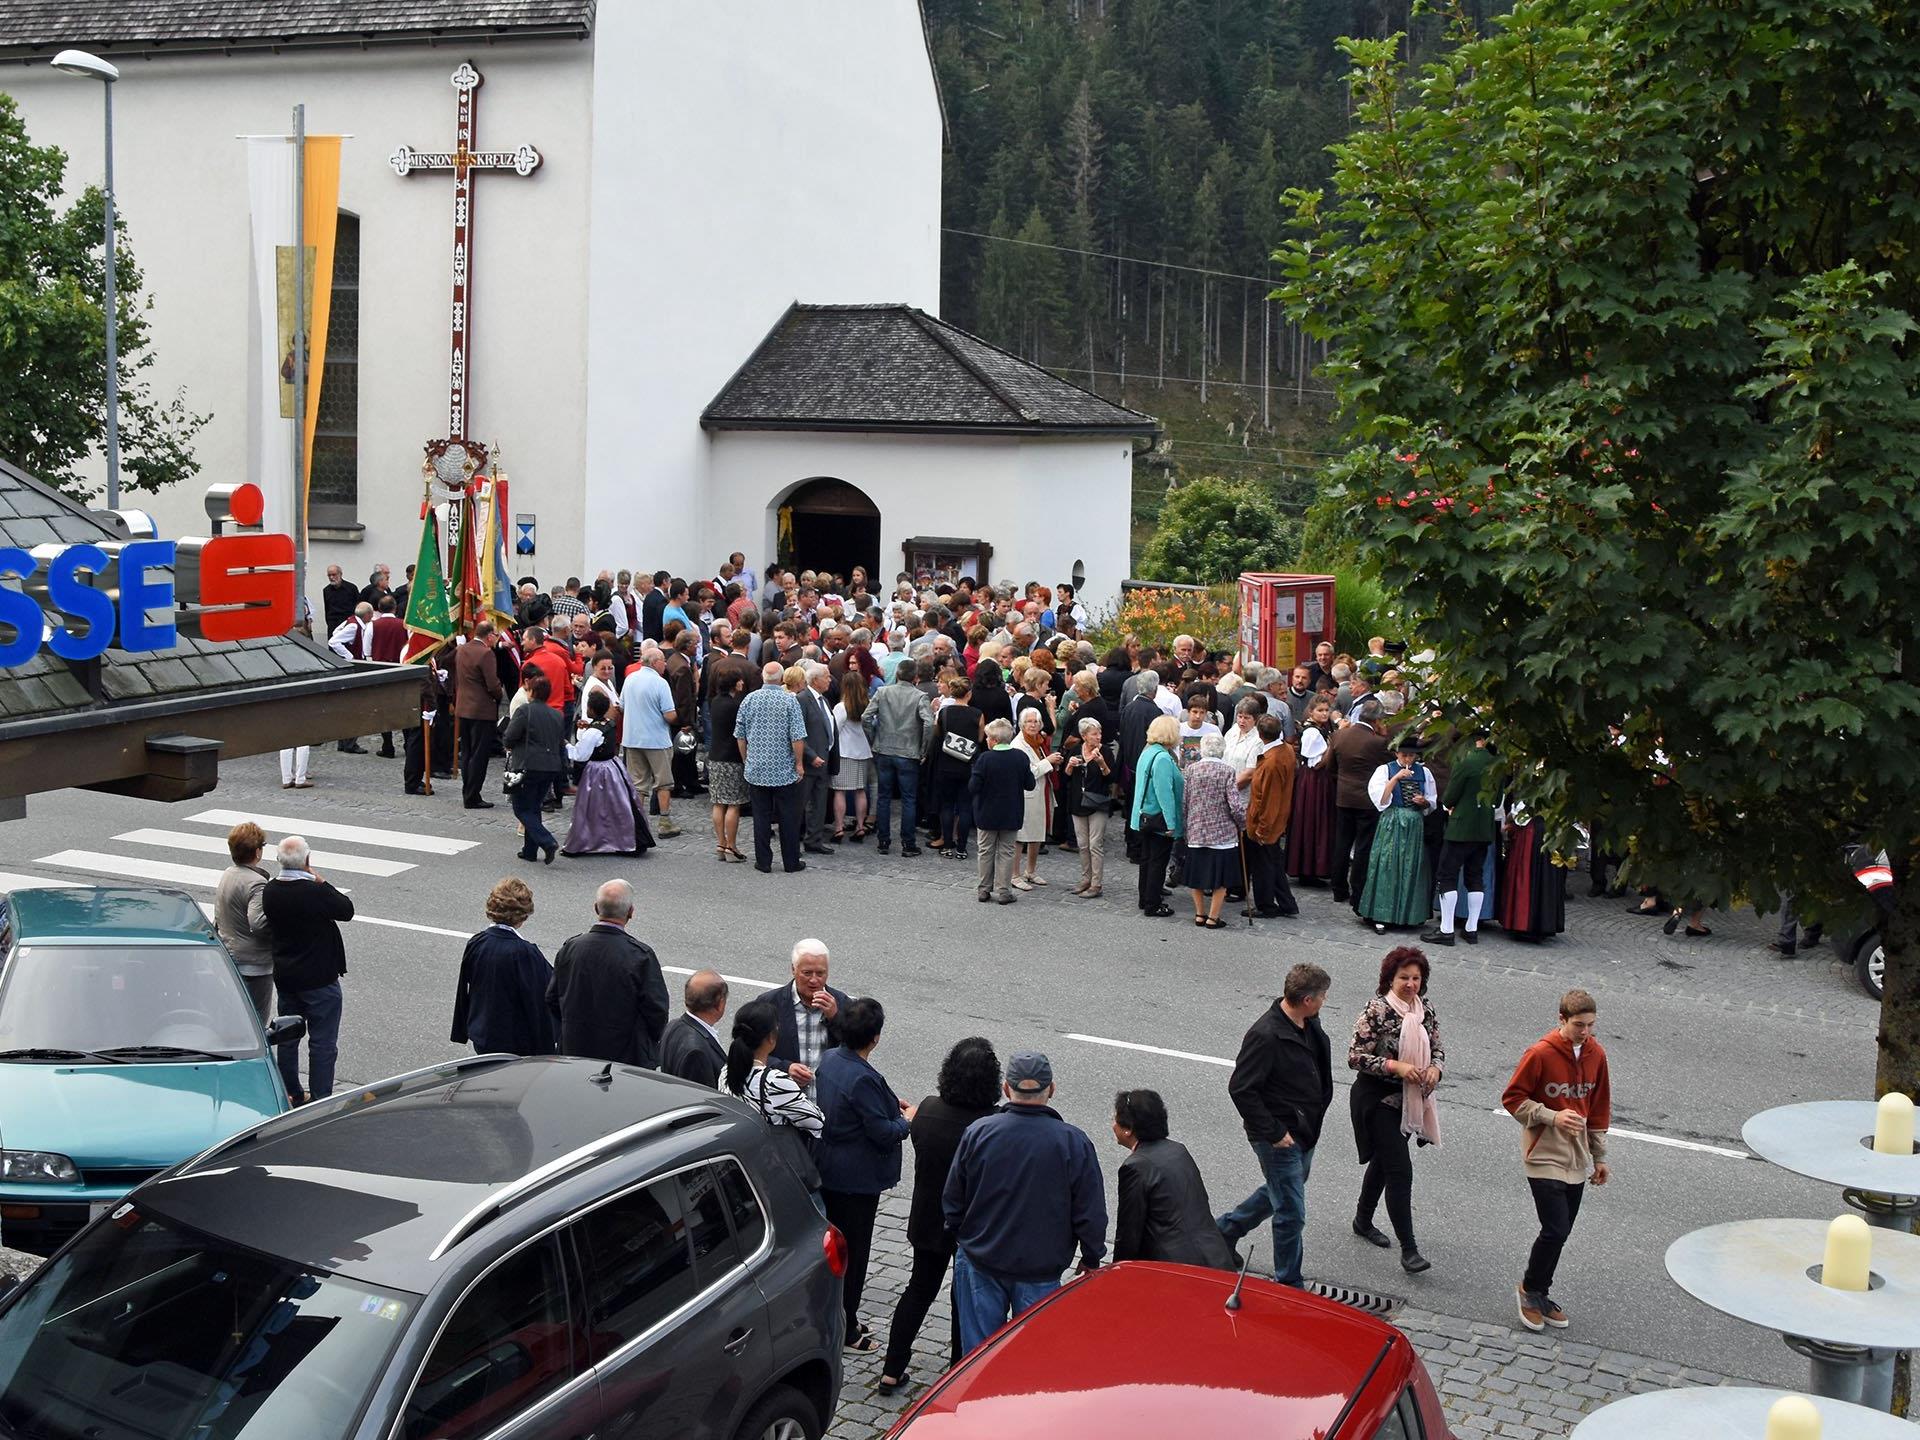 Großen Andrang bei der Pfarrkirche St. Gallenkirch gab es vor Kurzem beim Priesterwechsel.